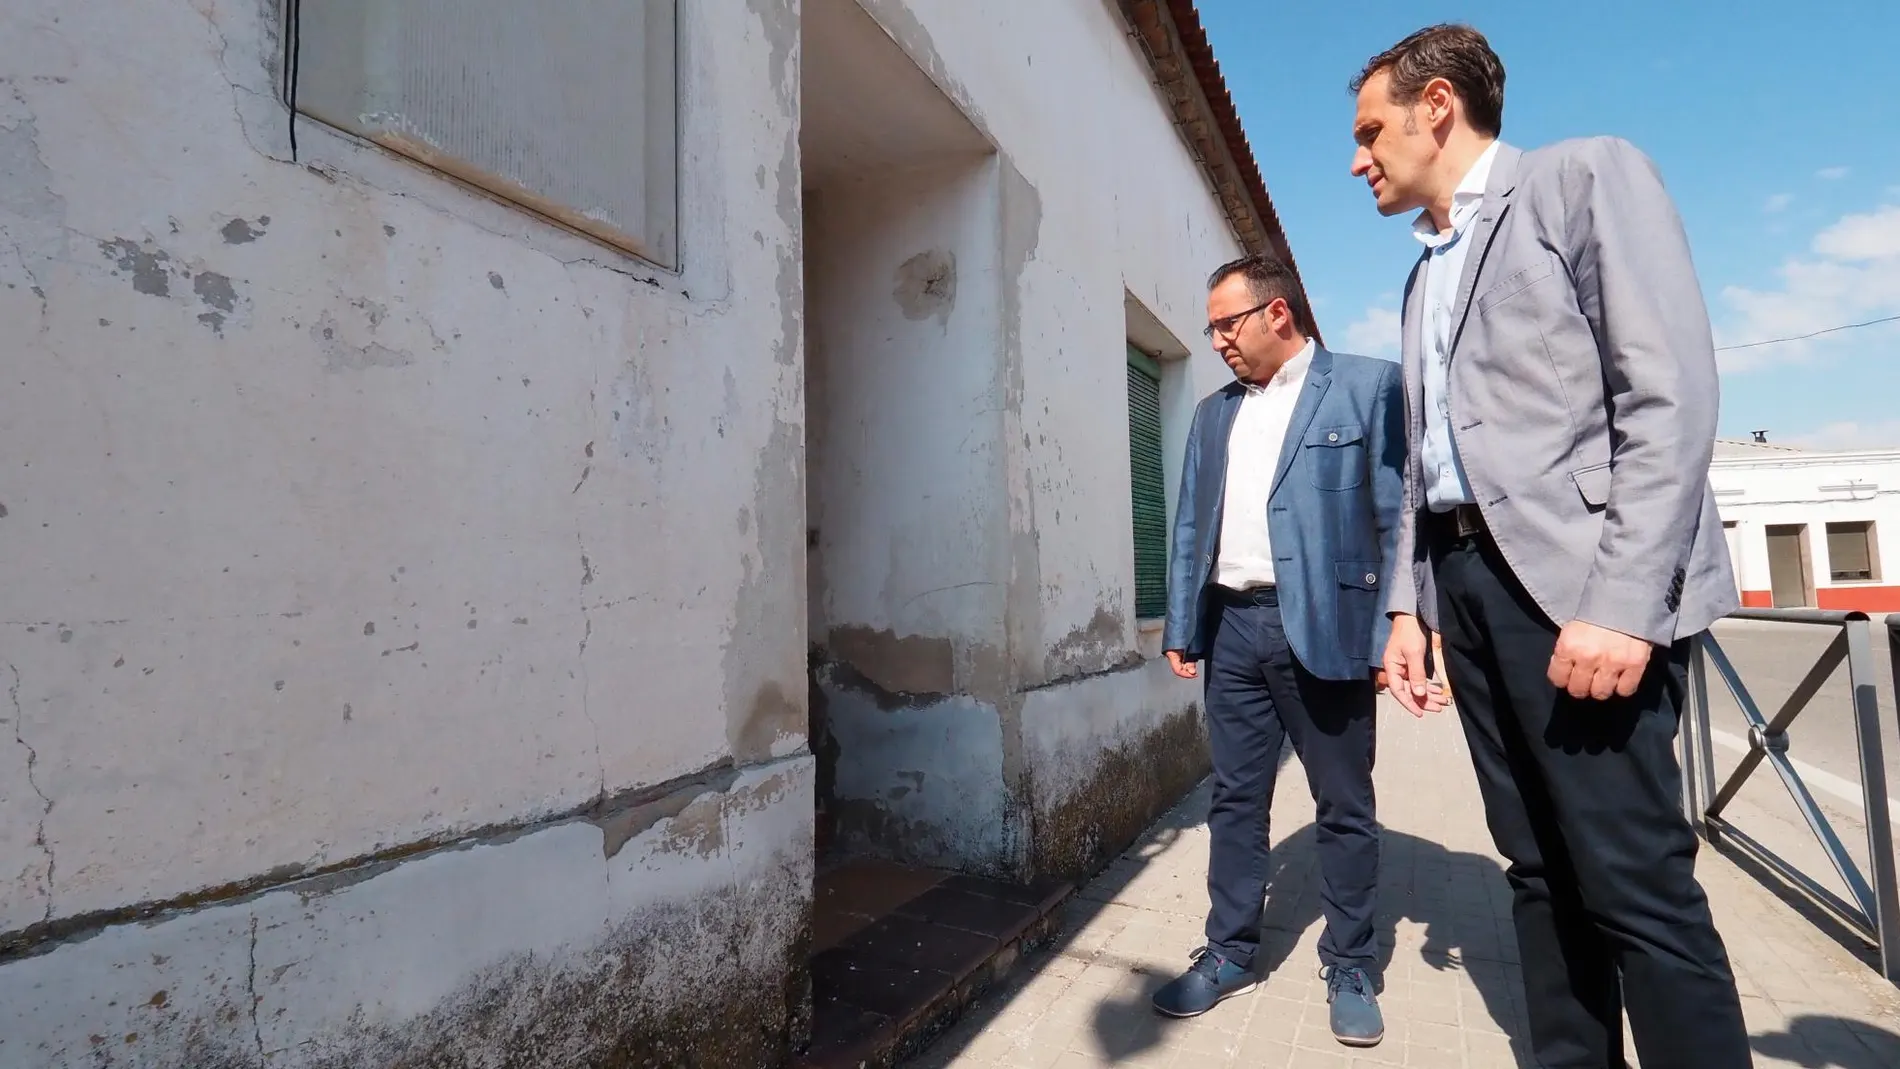 El presidente de la Diputación de Valladolid, Conrado Íscar, acompañado por el alcalde del Pedrajas, Alfonso Romo, visita las zonas dañadas por la tromba de agua